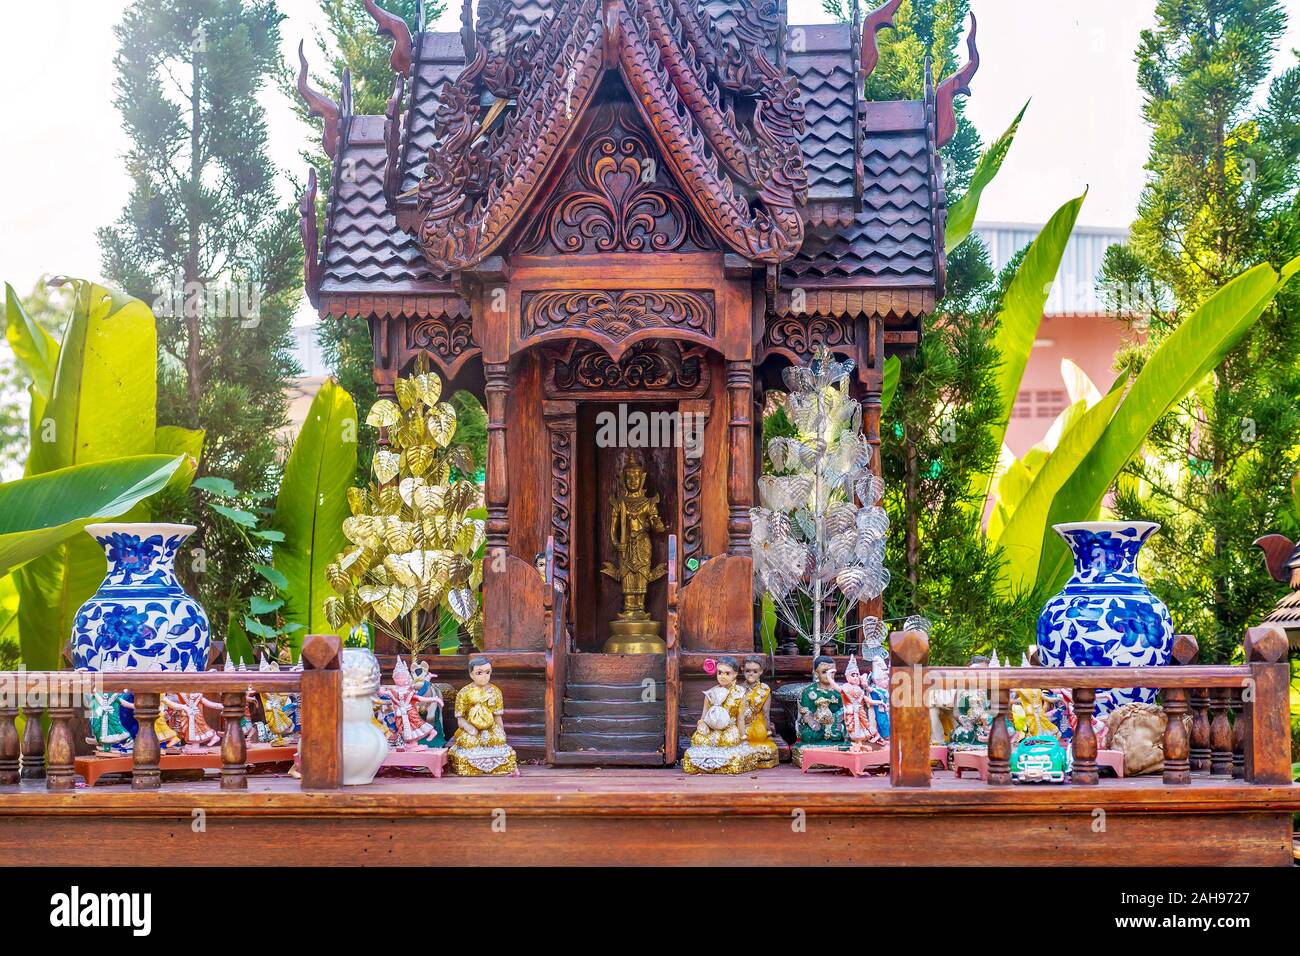 Ein Thai Geist Haus, eine kleine Nachbildung eines traditionellen Struktur, wo die Gottheit oder spirituellen Wächter des Hauses lebt und Angebote gemacht werden. Stockfoto